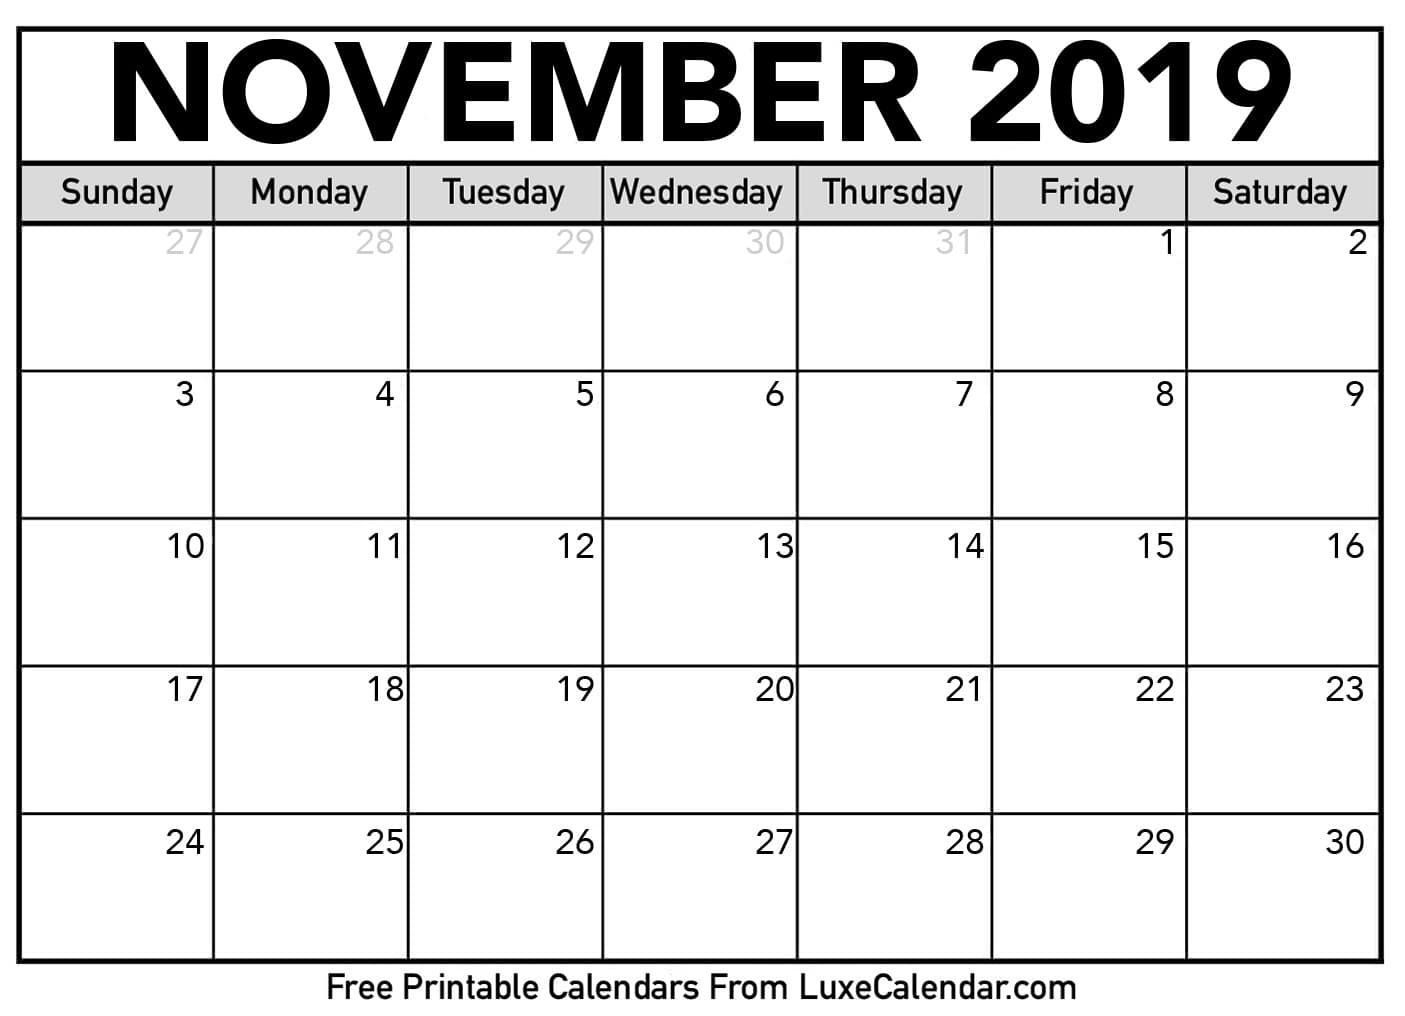 November 2019 Printable Calendars - Luxe Calendar Free